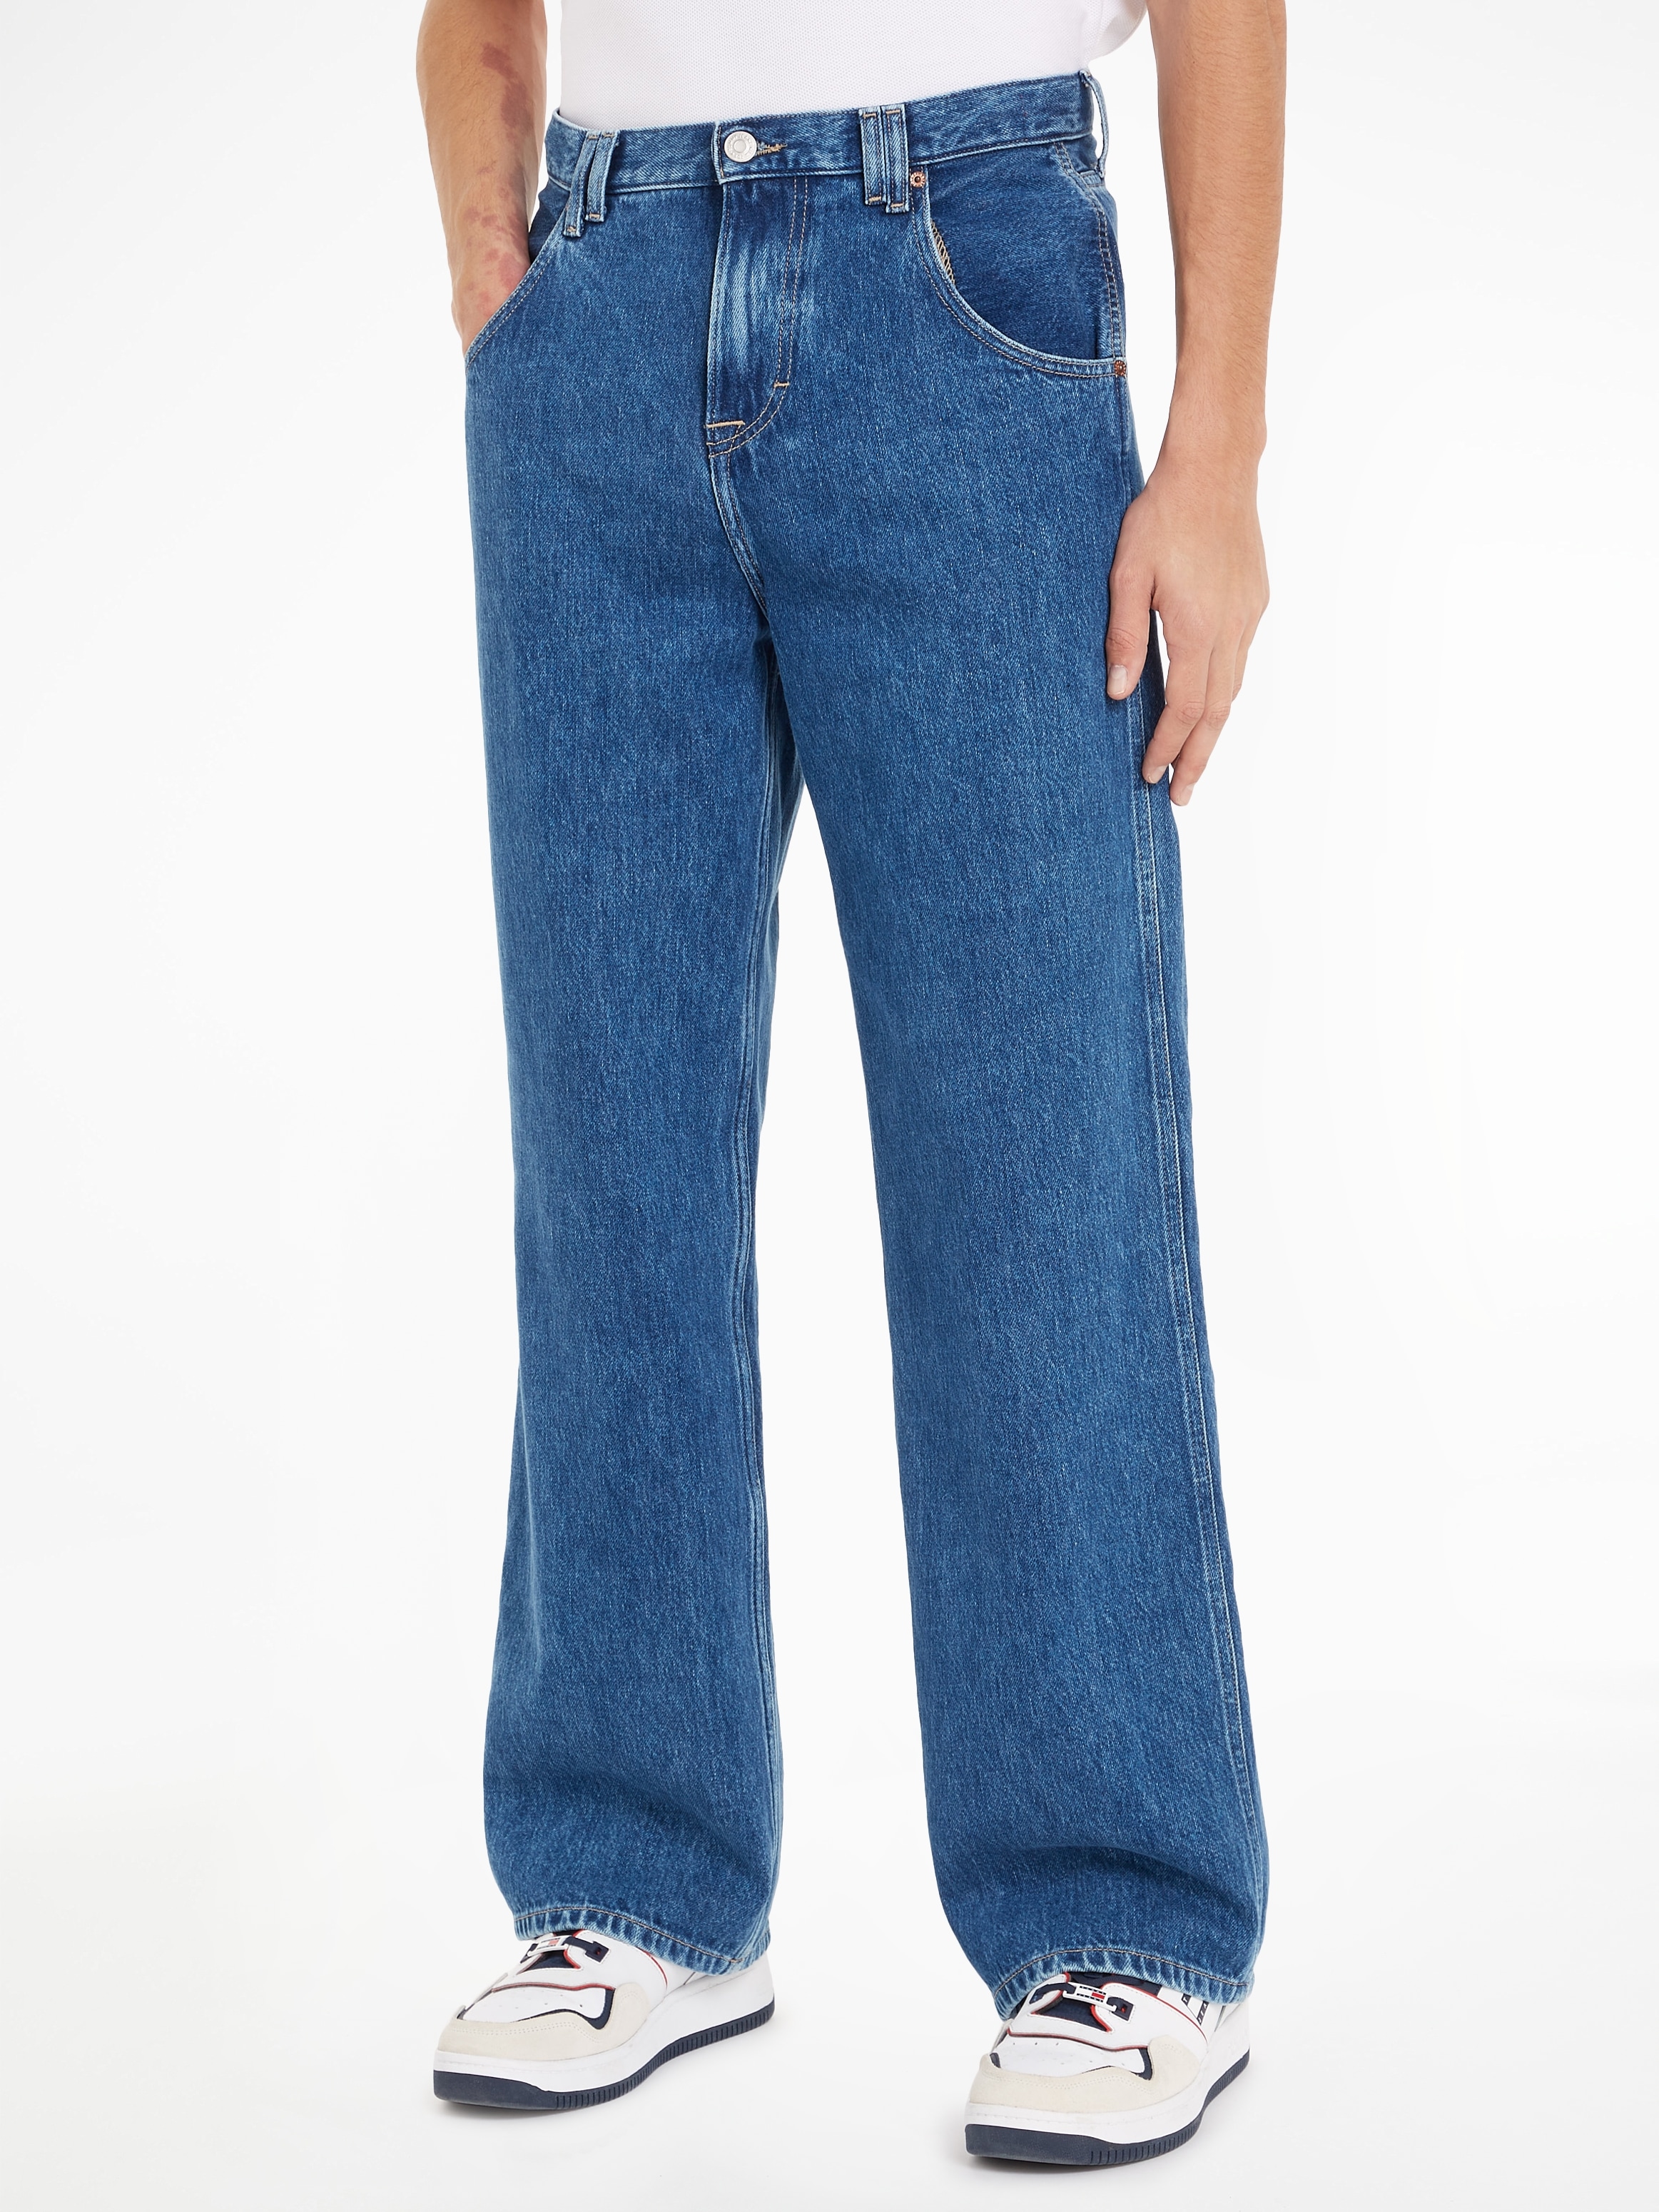 Weite Jeans »DAISY JEAN LR BGY CG4014«, im klassischen 5-Pocket-Style